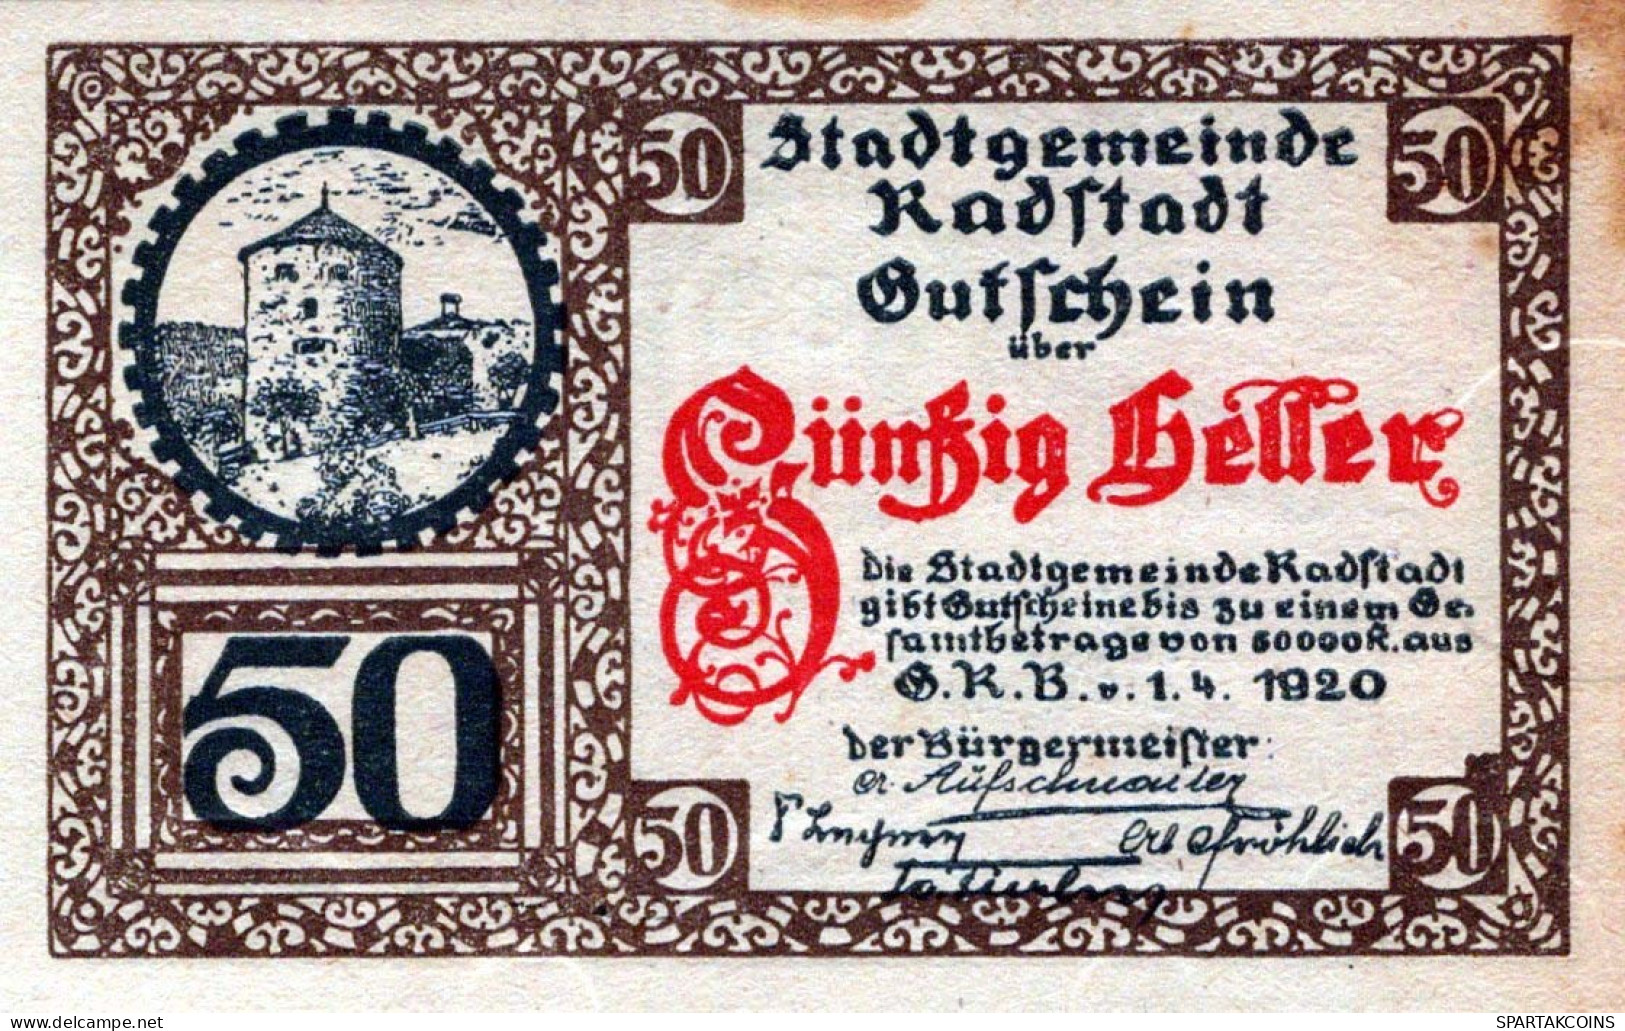 50 HELLER 1920 Stadt RADSTADT Salzburg Österreich Notgeld Banknote #PD985 - [11] Local Banknote Issues